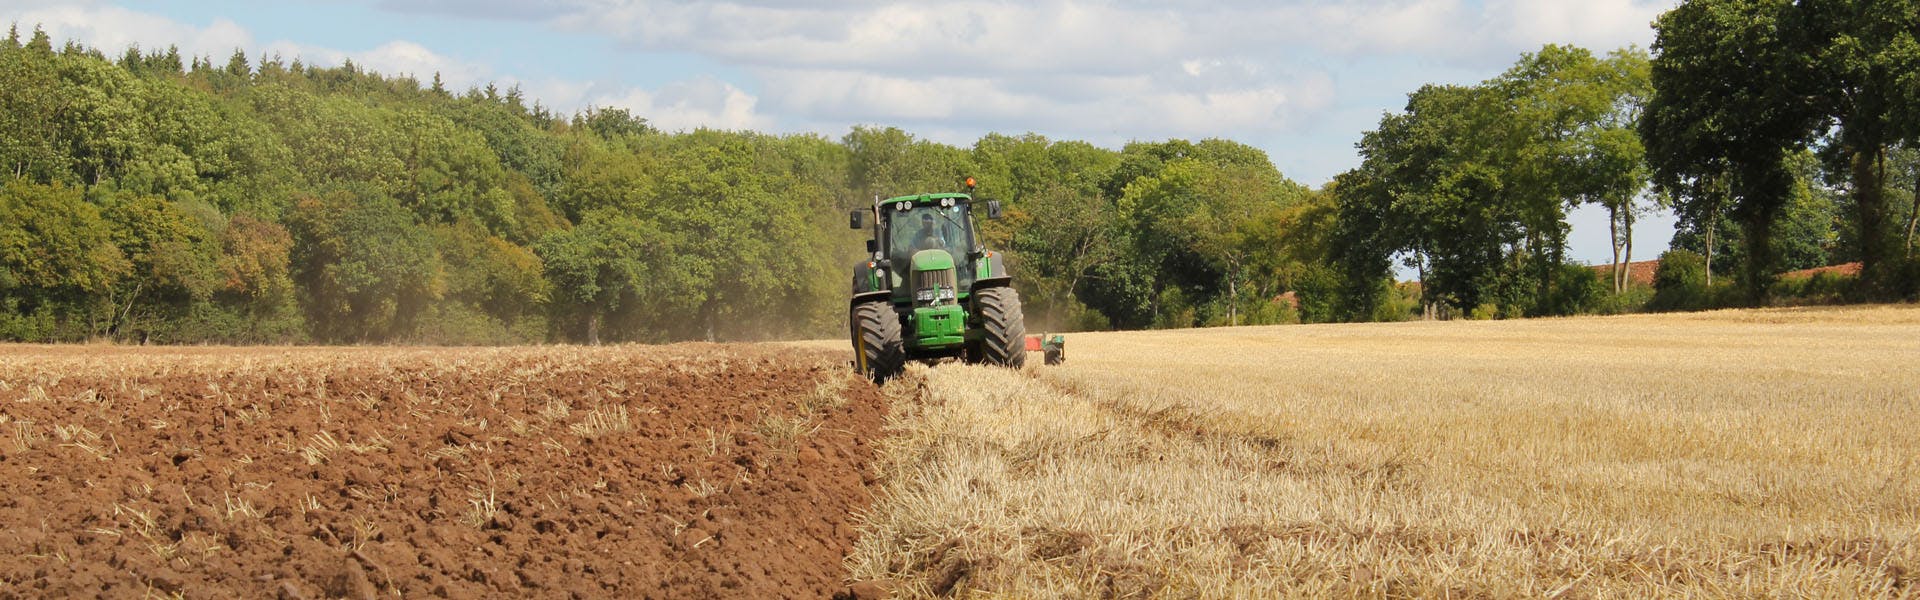 Precision Farming im FieldBee Vergleich zu anderen Traktor-GPS-Systemen